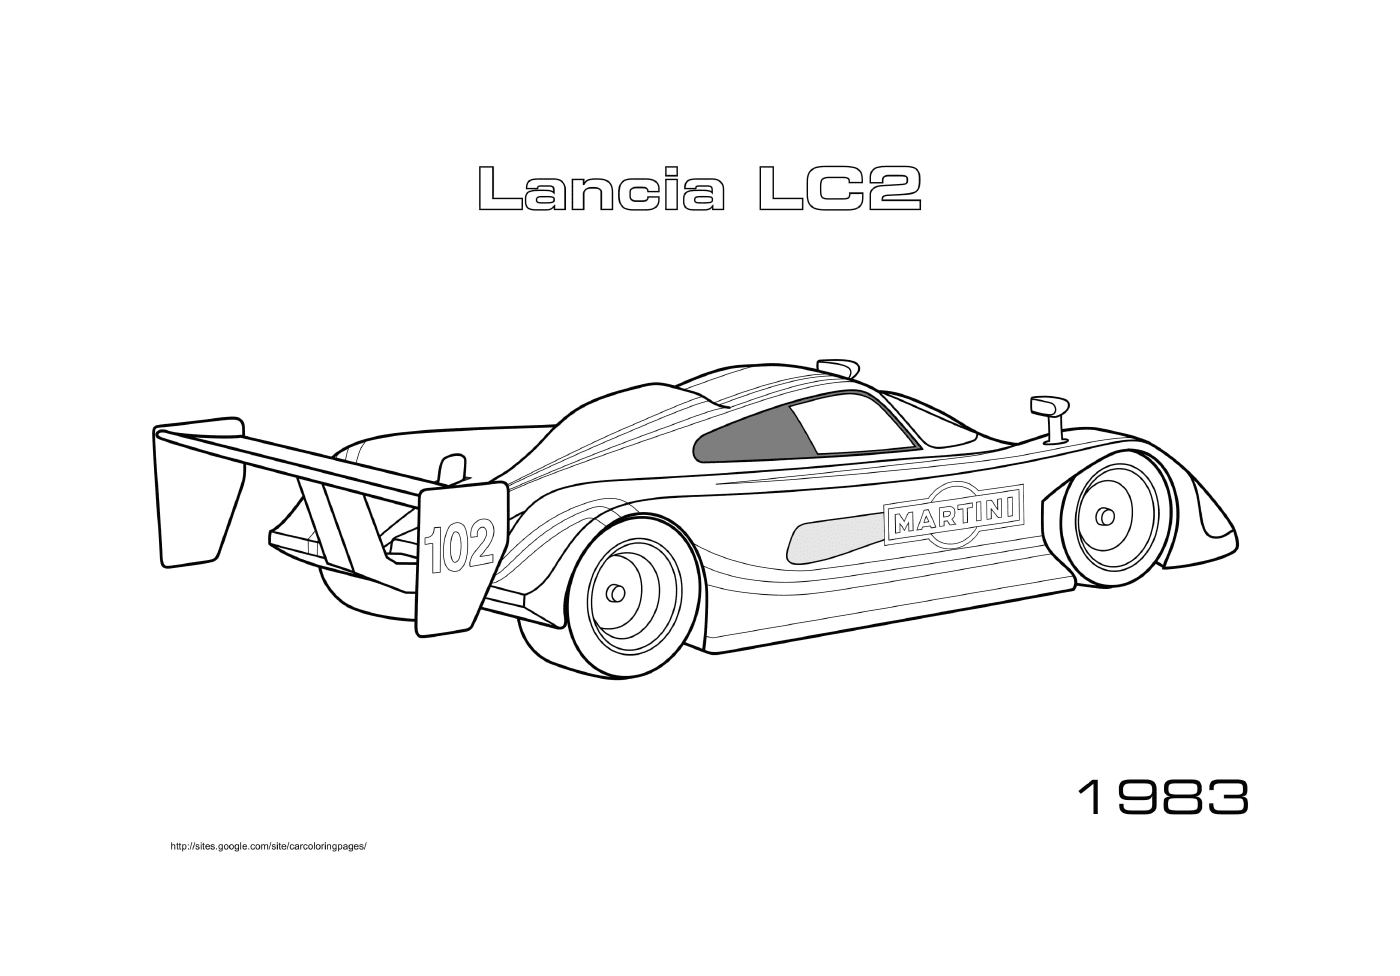  Lancia Lc2 del 1983 